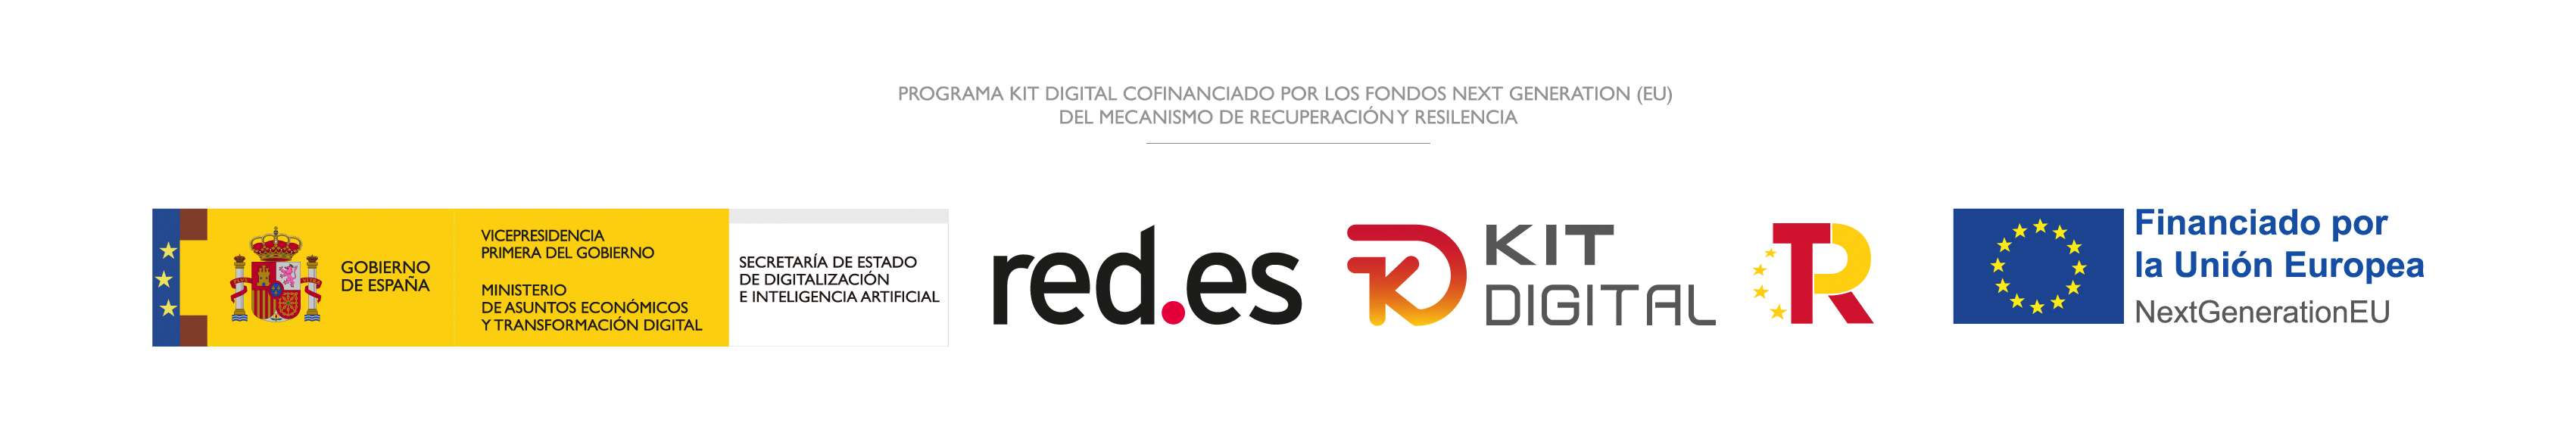 Kit digital Red.es